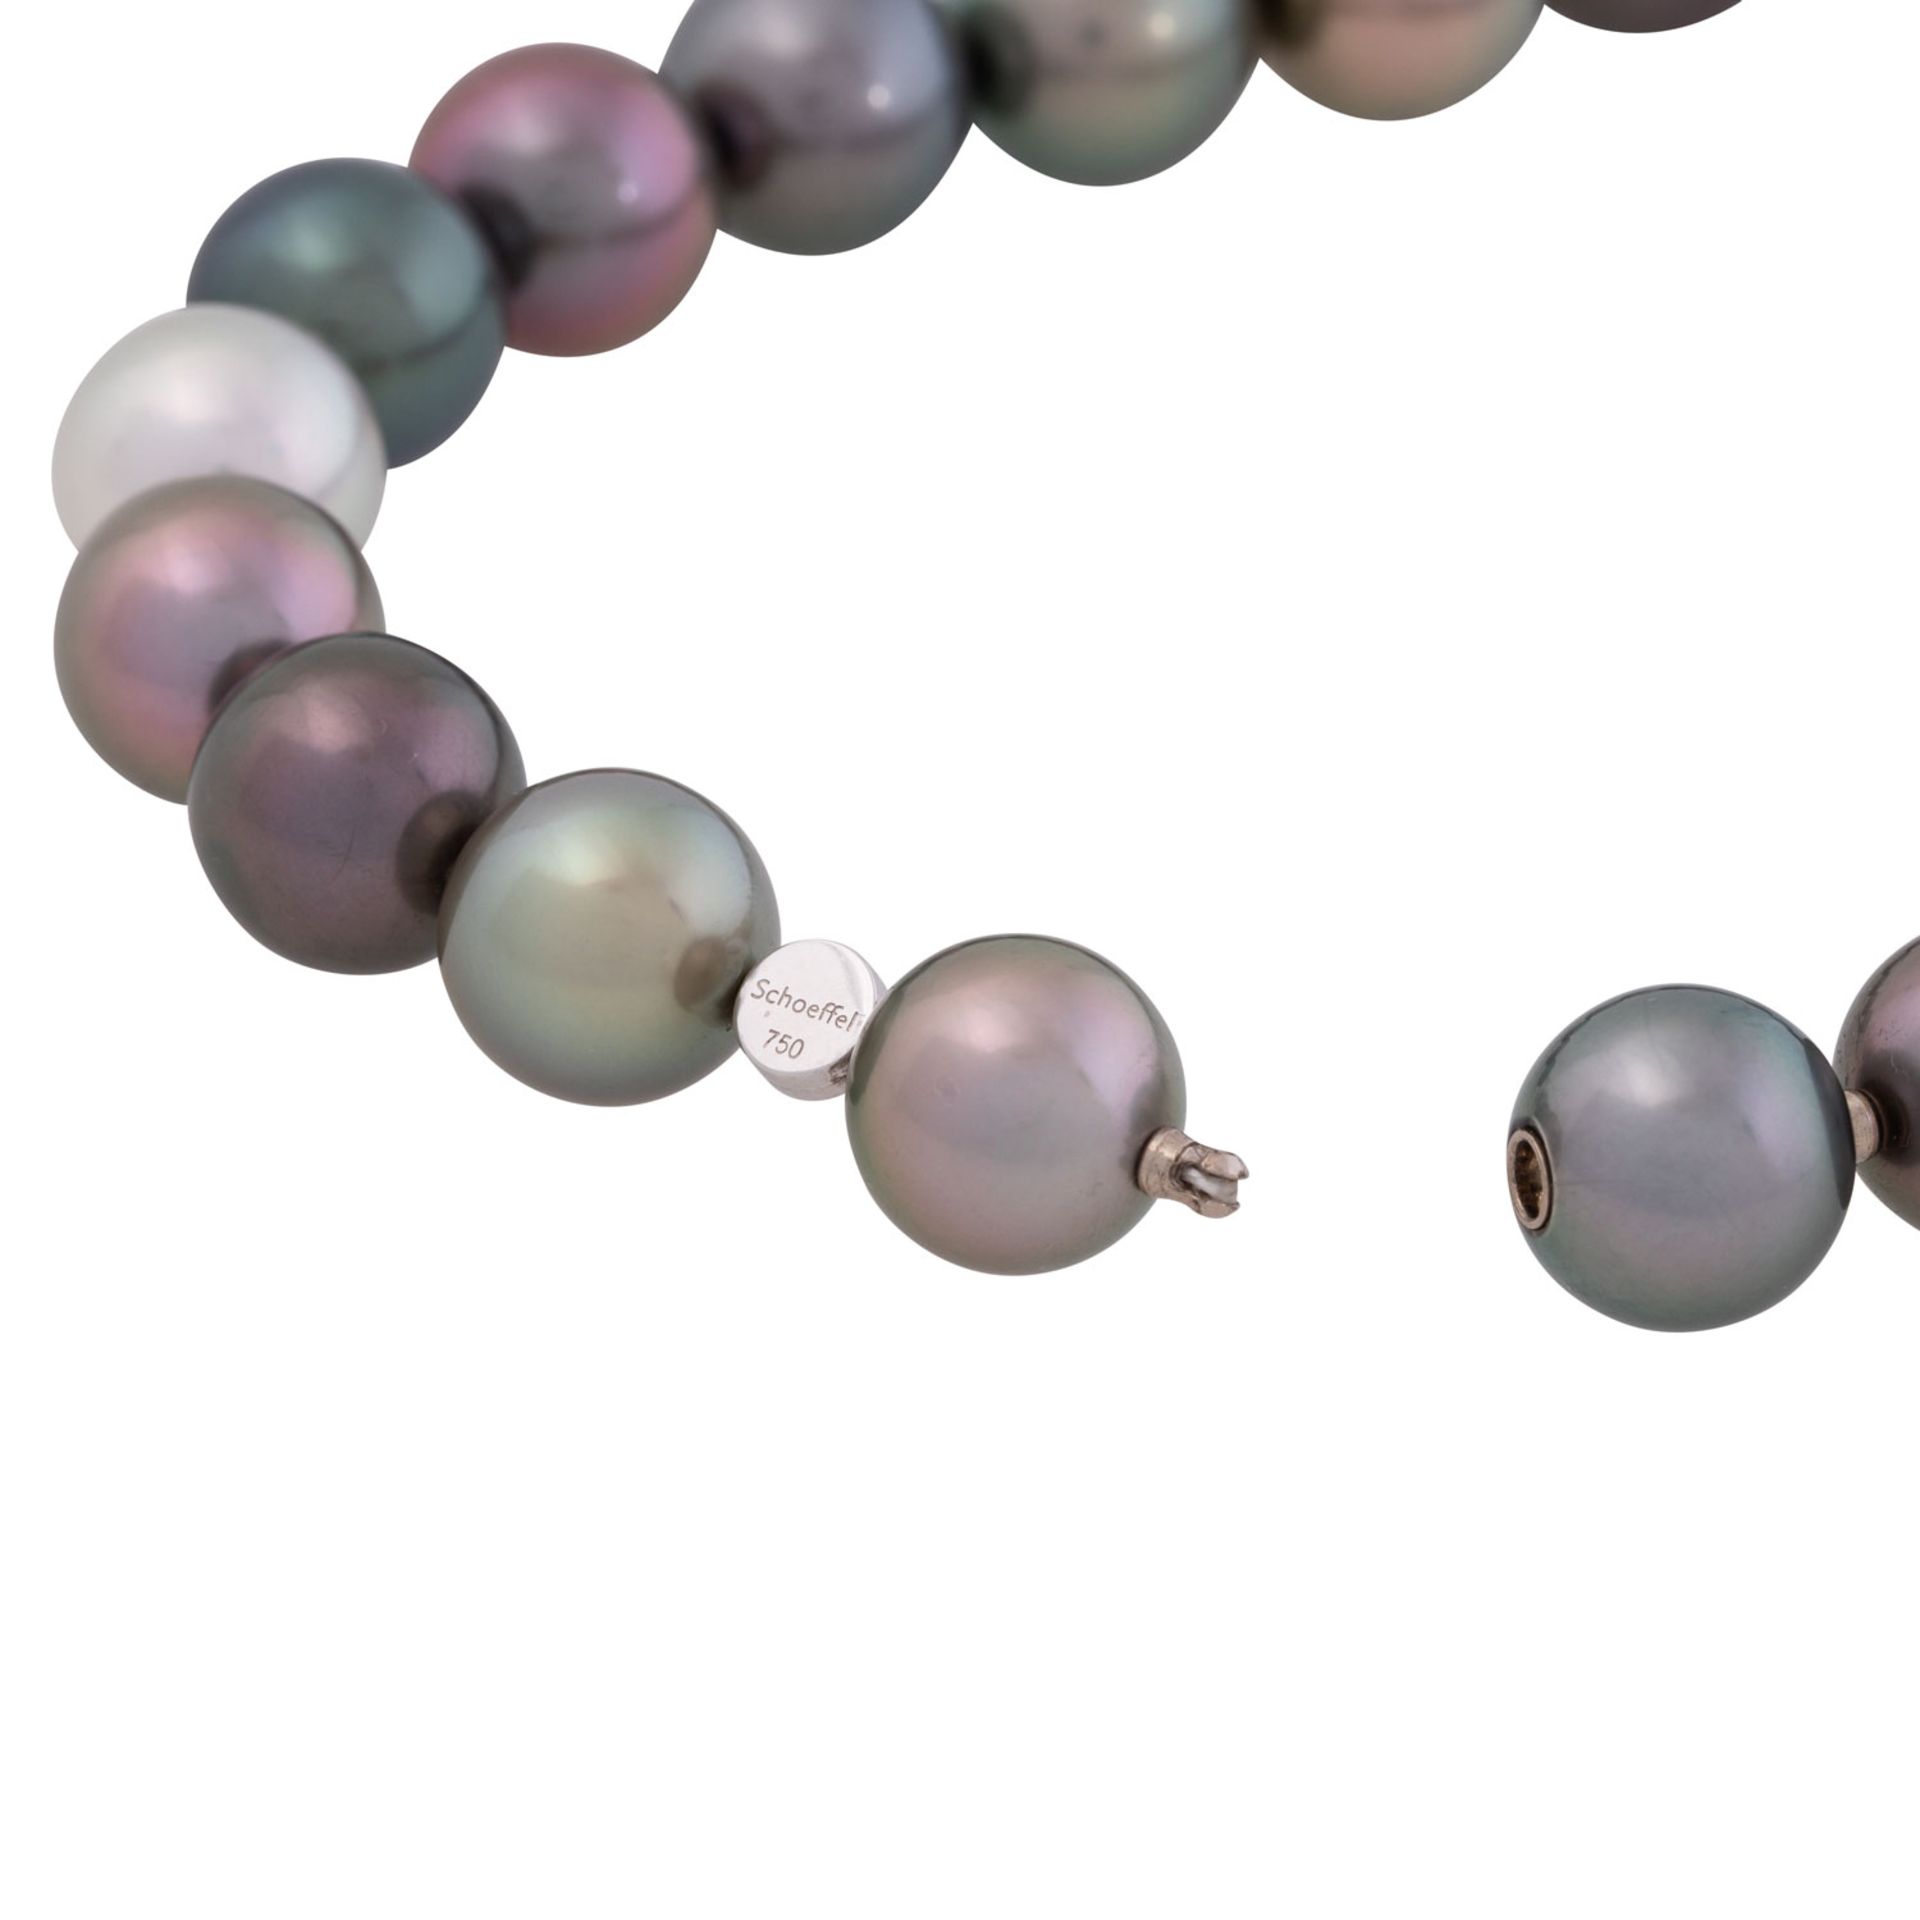 SCHOEFFEL hochfeine Tahiti Perlenkette, - Image 5 of 6